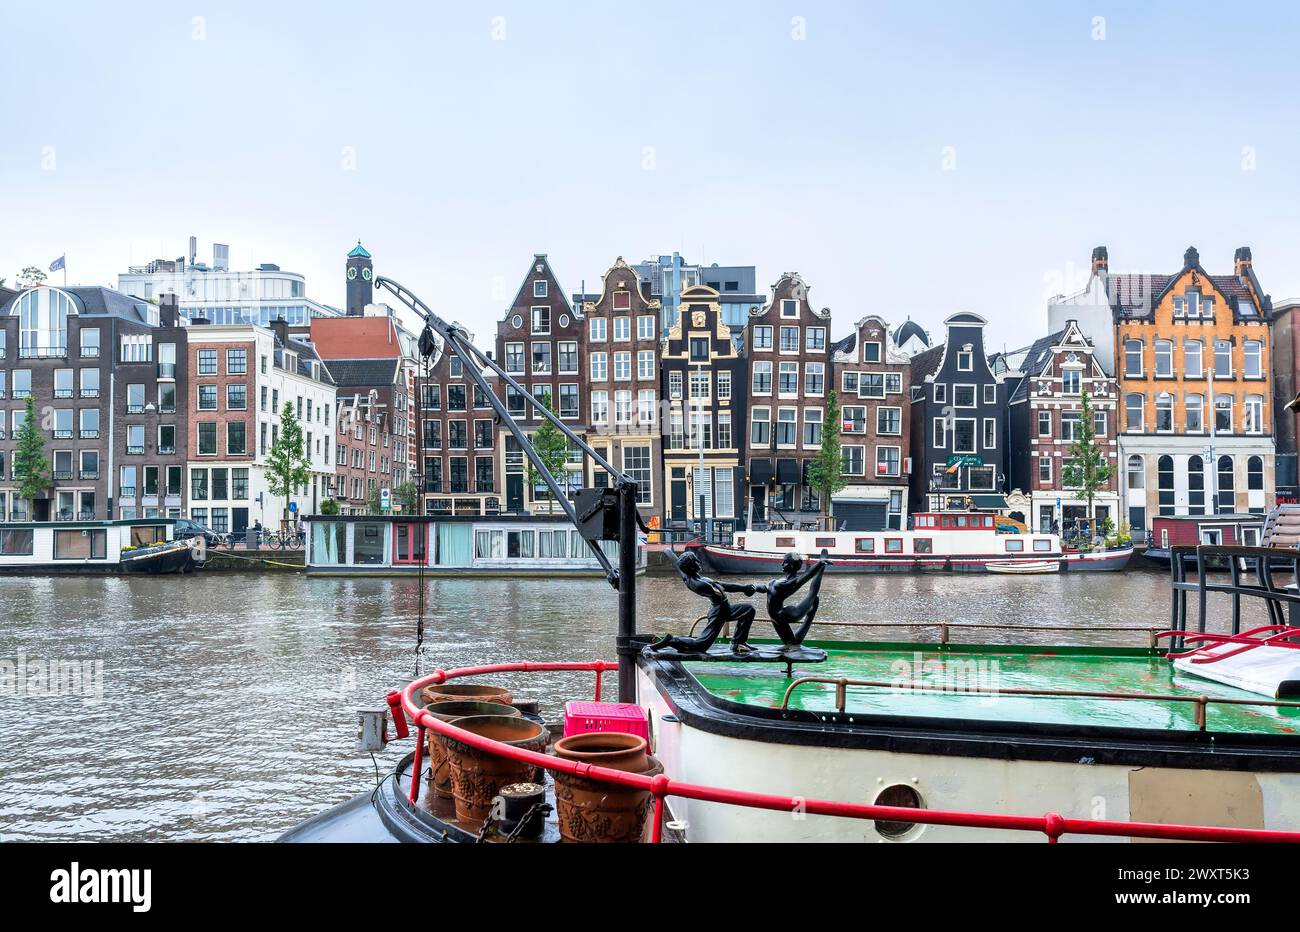 Amsterdam, pays-Bas - 12 juin 2019 : vue sur la journée avec maisons hollandaises typiques, canal et magasins à Amstel, Amsterdam, pays-Bas. Banque D'Images